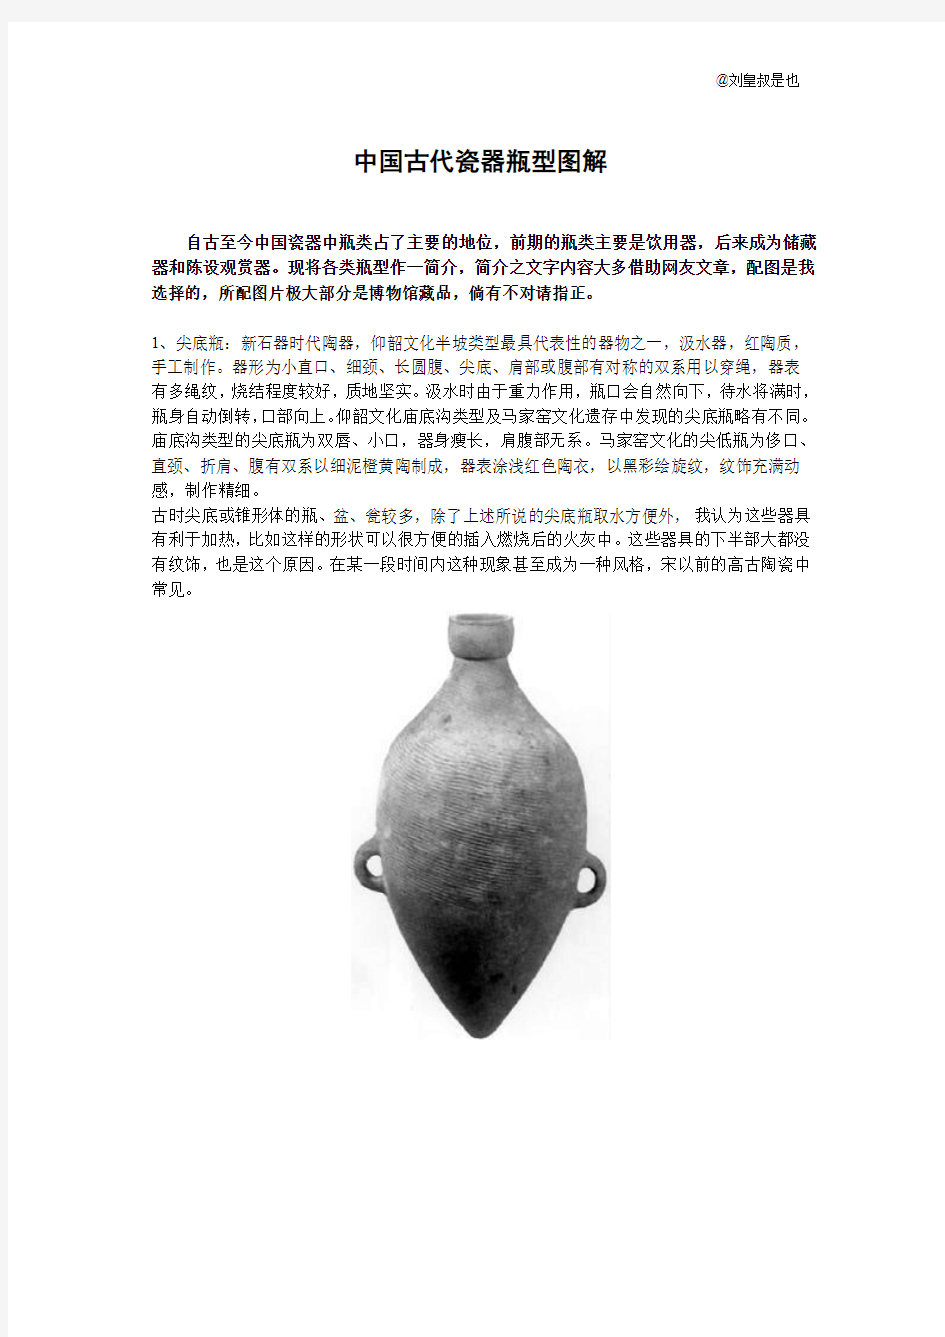 中国古代瓷器瓶型图解